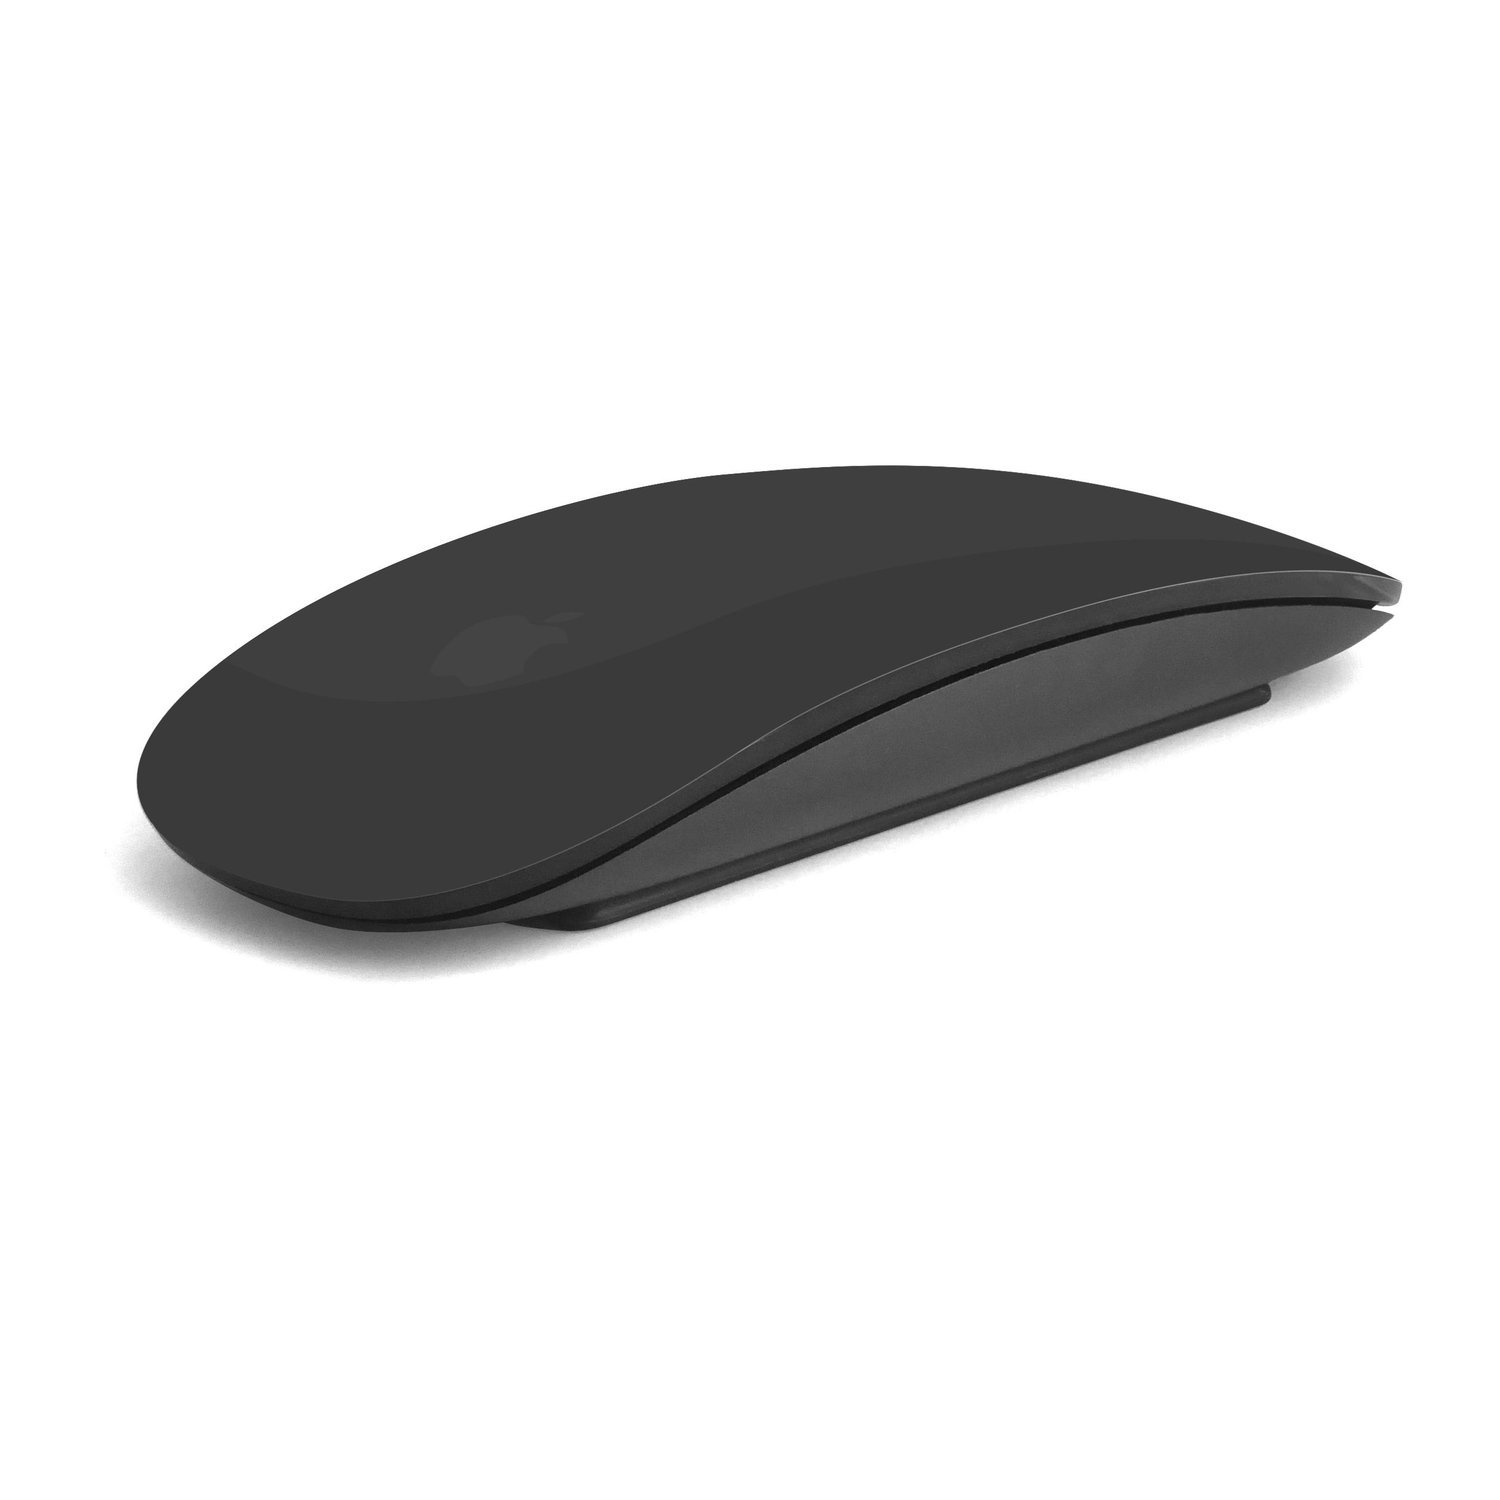 Apple MRME2LL/A Magic Mouse 2 (Current Model) - at MacSales.com